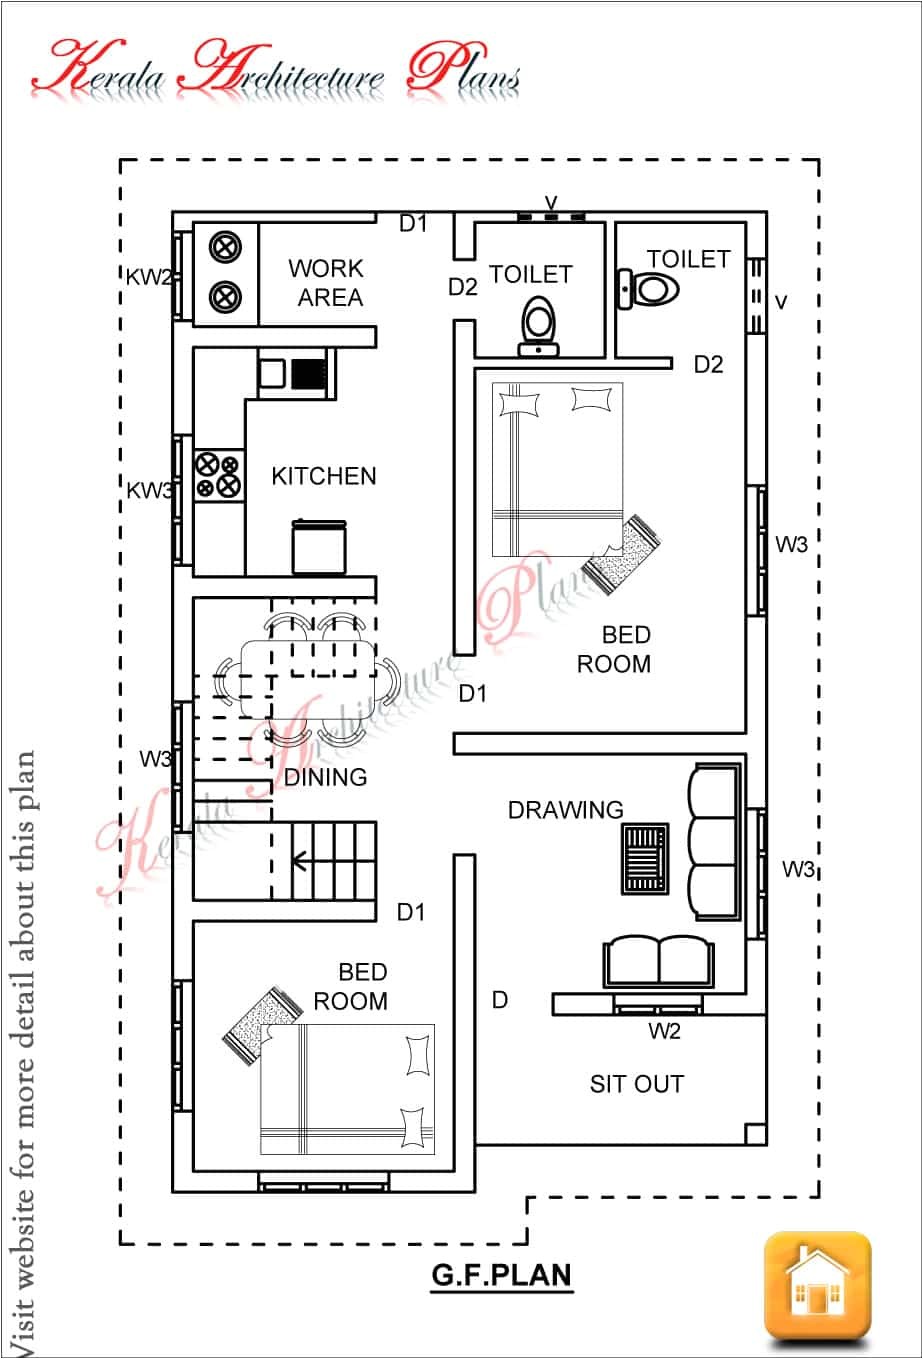 single story kerala house plan at 1200 sq ft